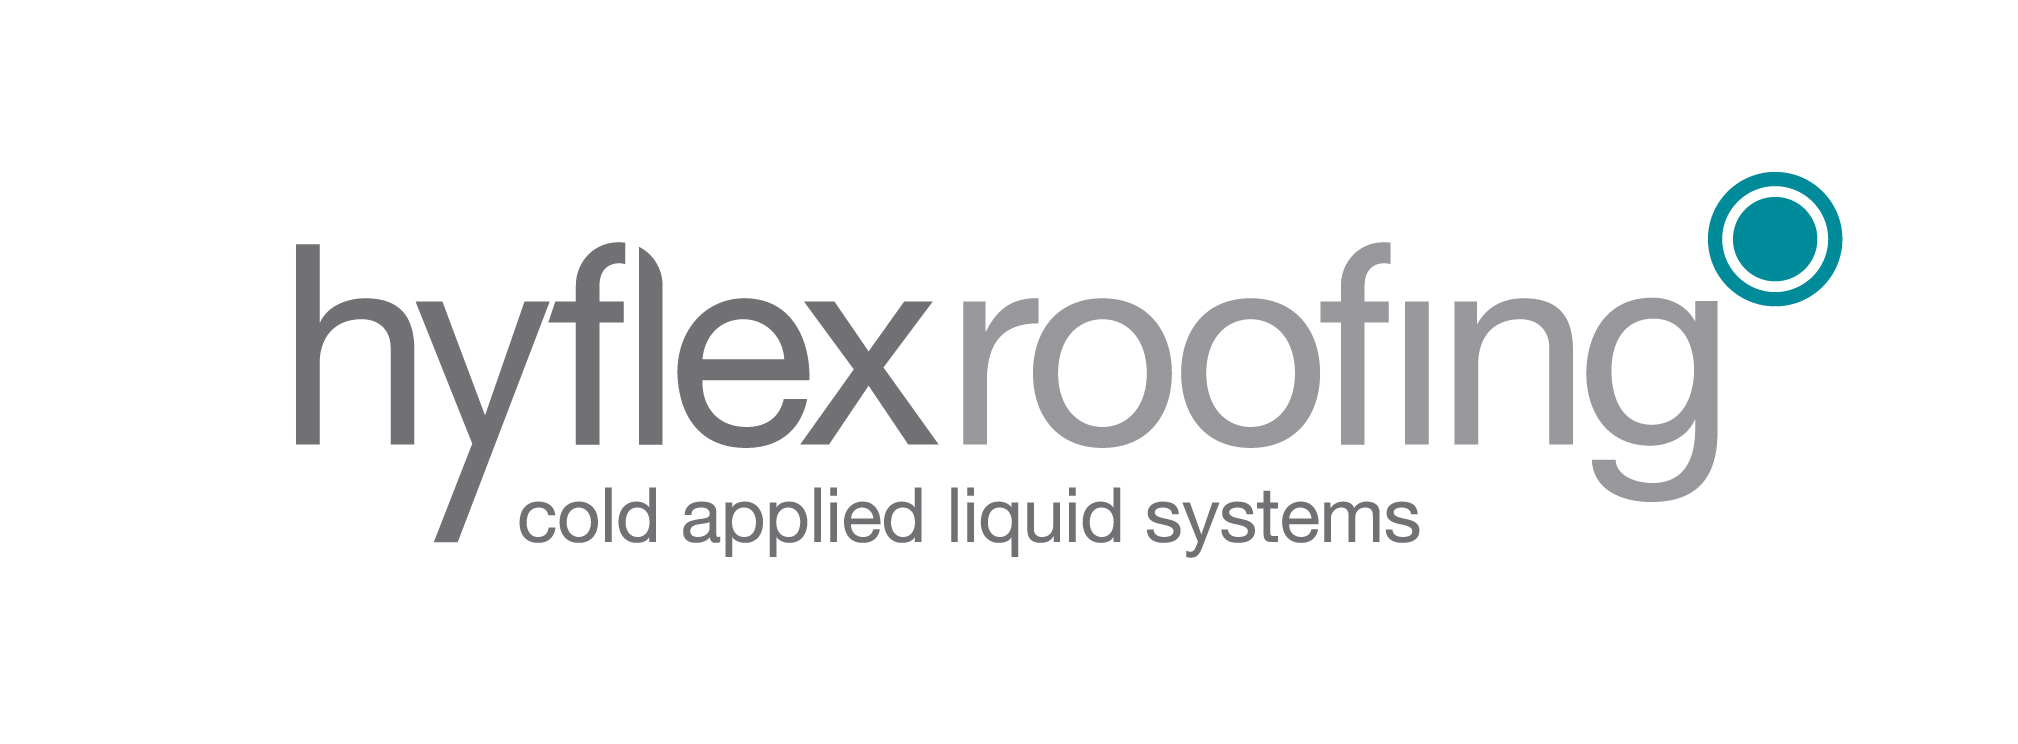 Hyflex Roofing Ltd.